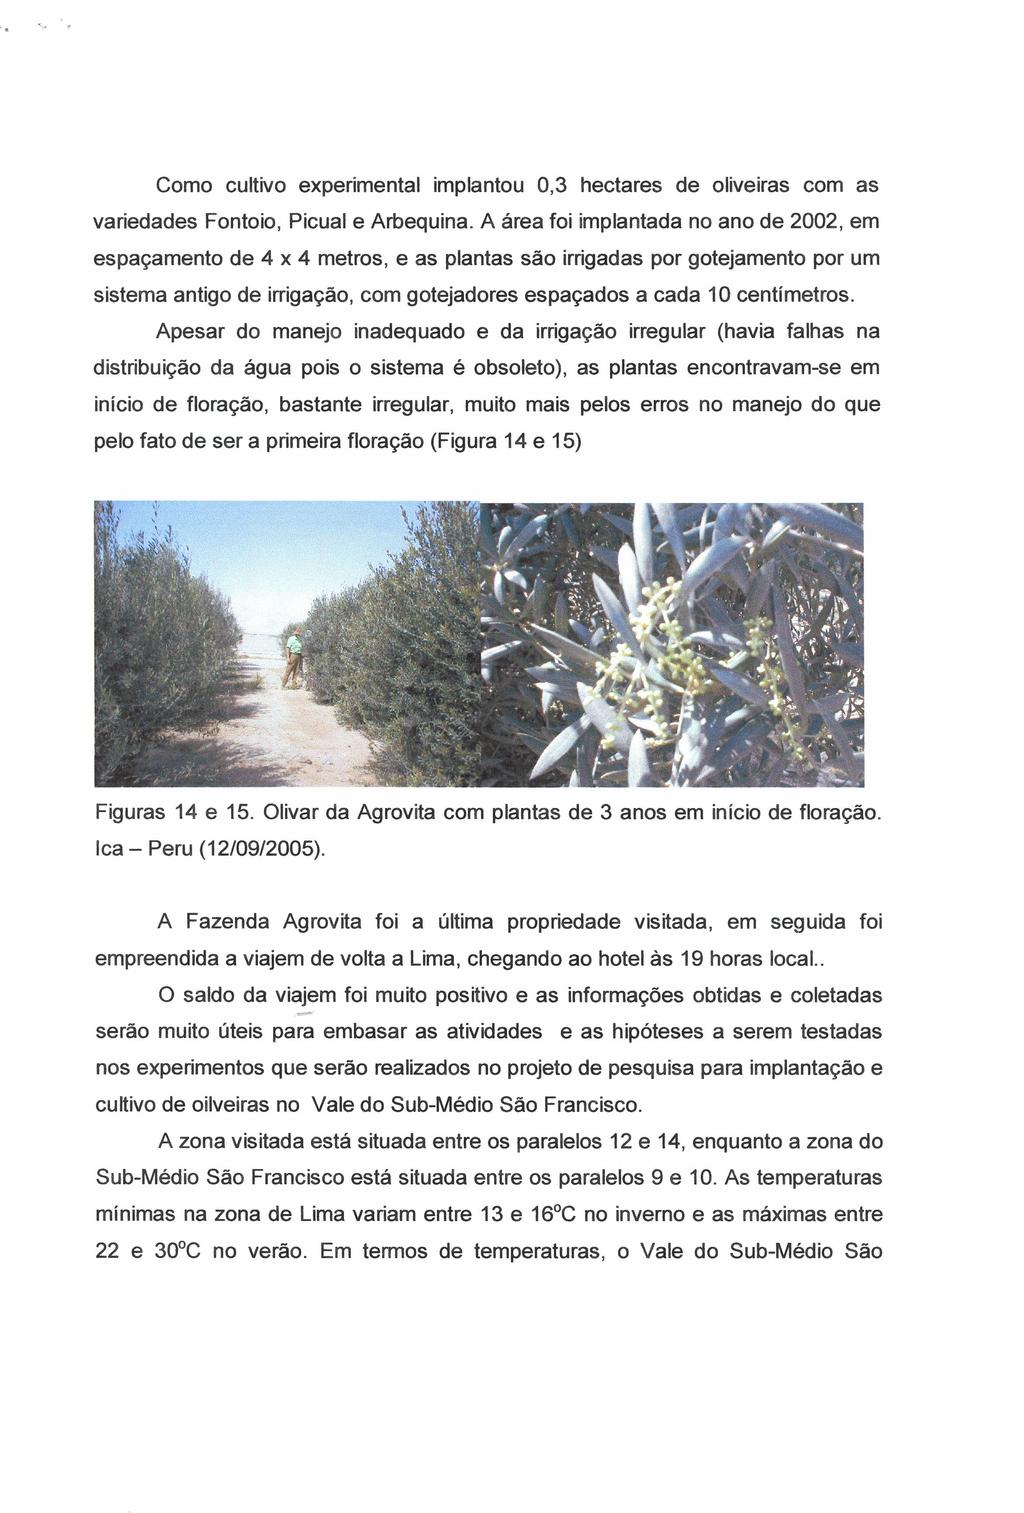 Como cultivo experimental implantou 0,3 hectares de oliveiras com as variedades Fontoio, Picual e Arbequina.